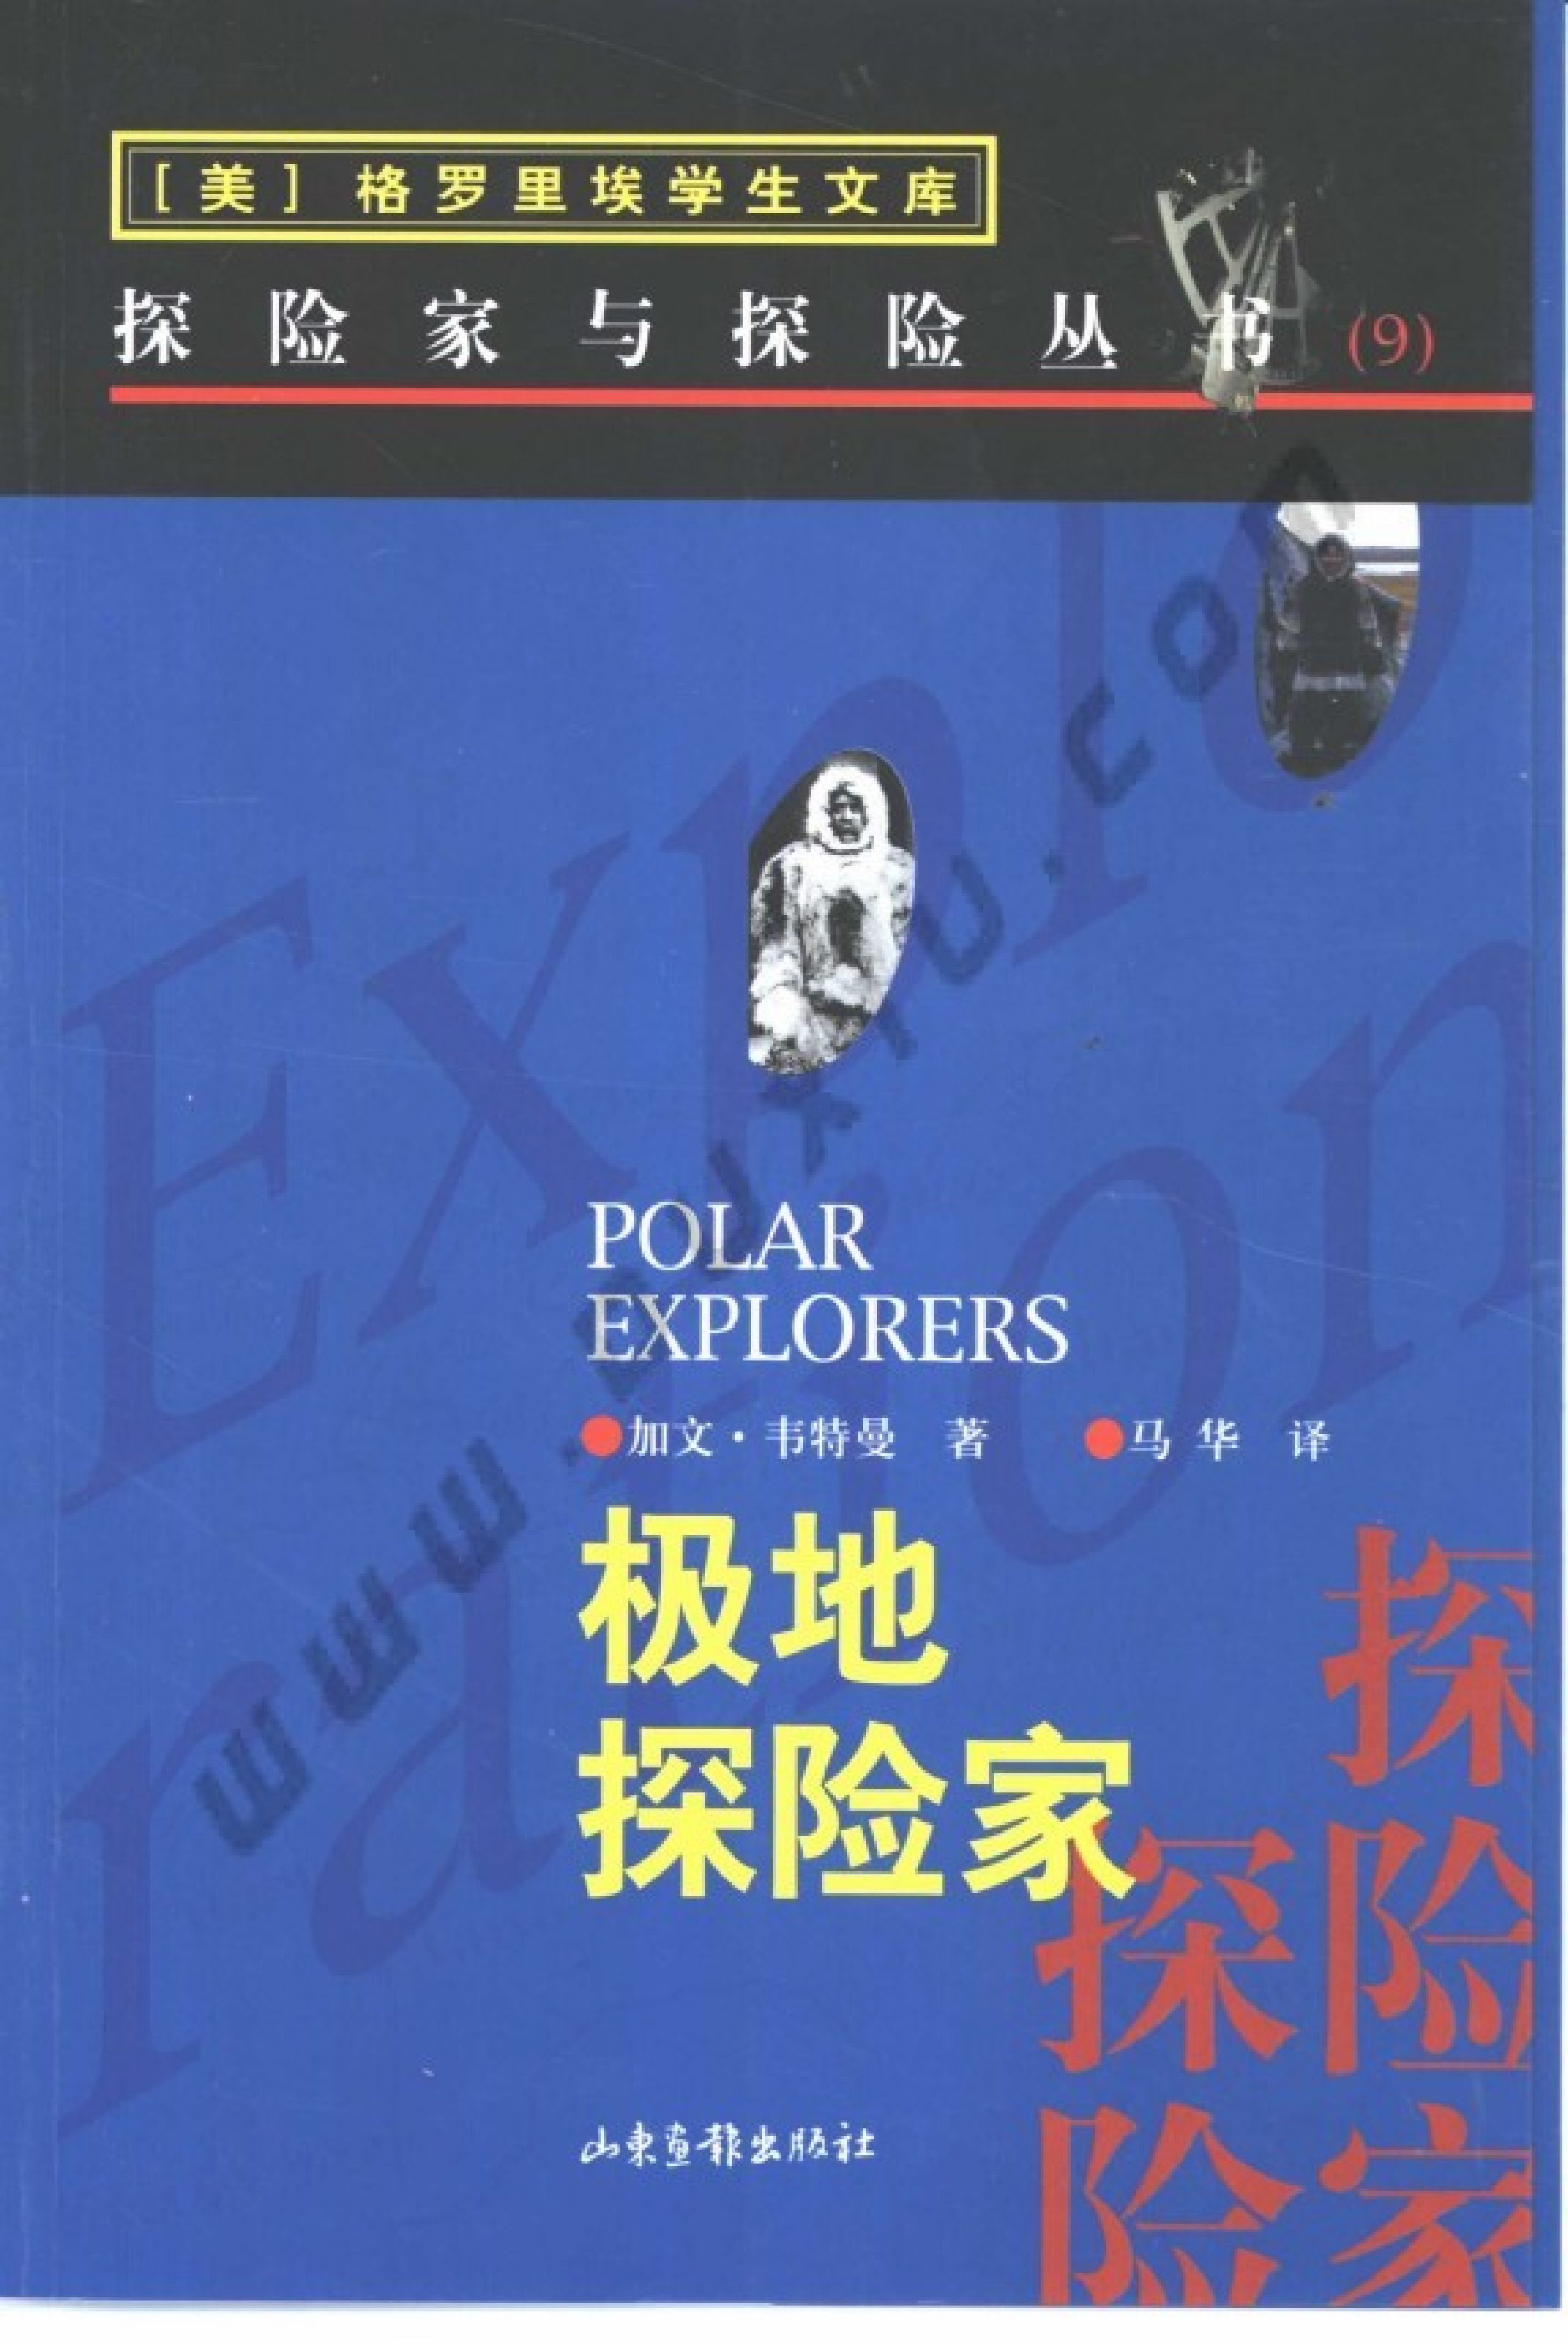 09 极地探险家